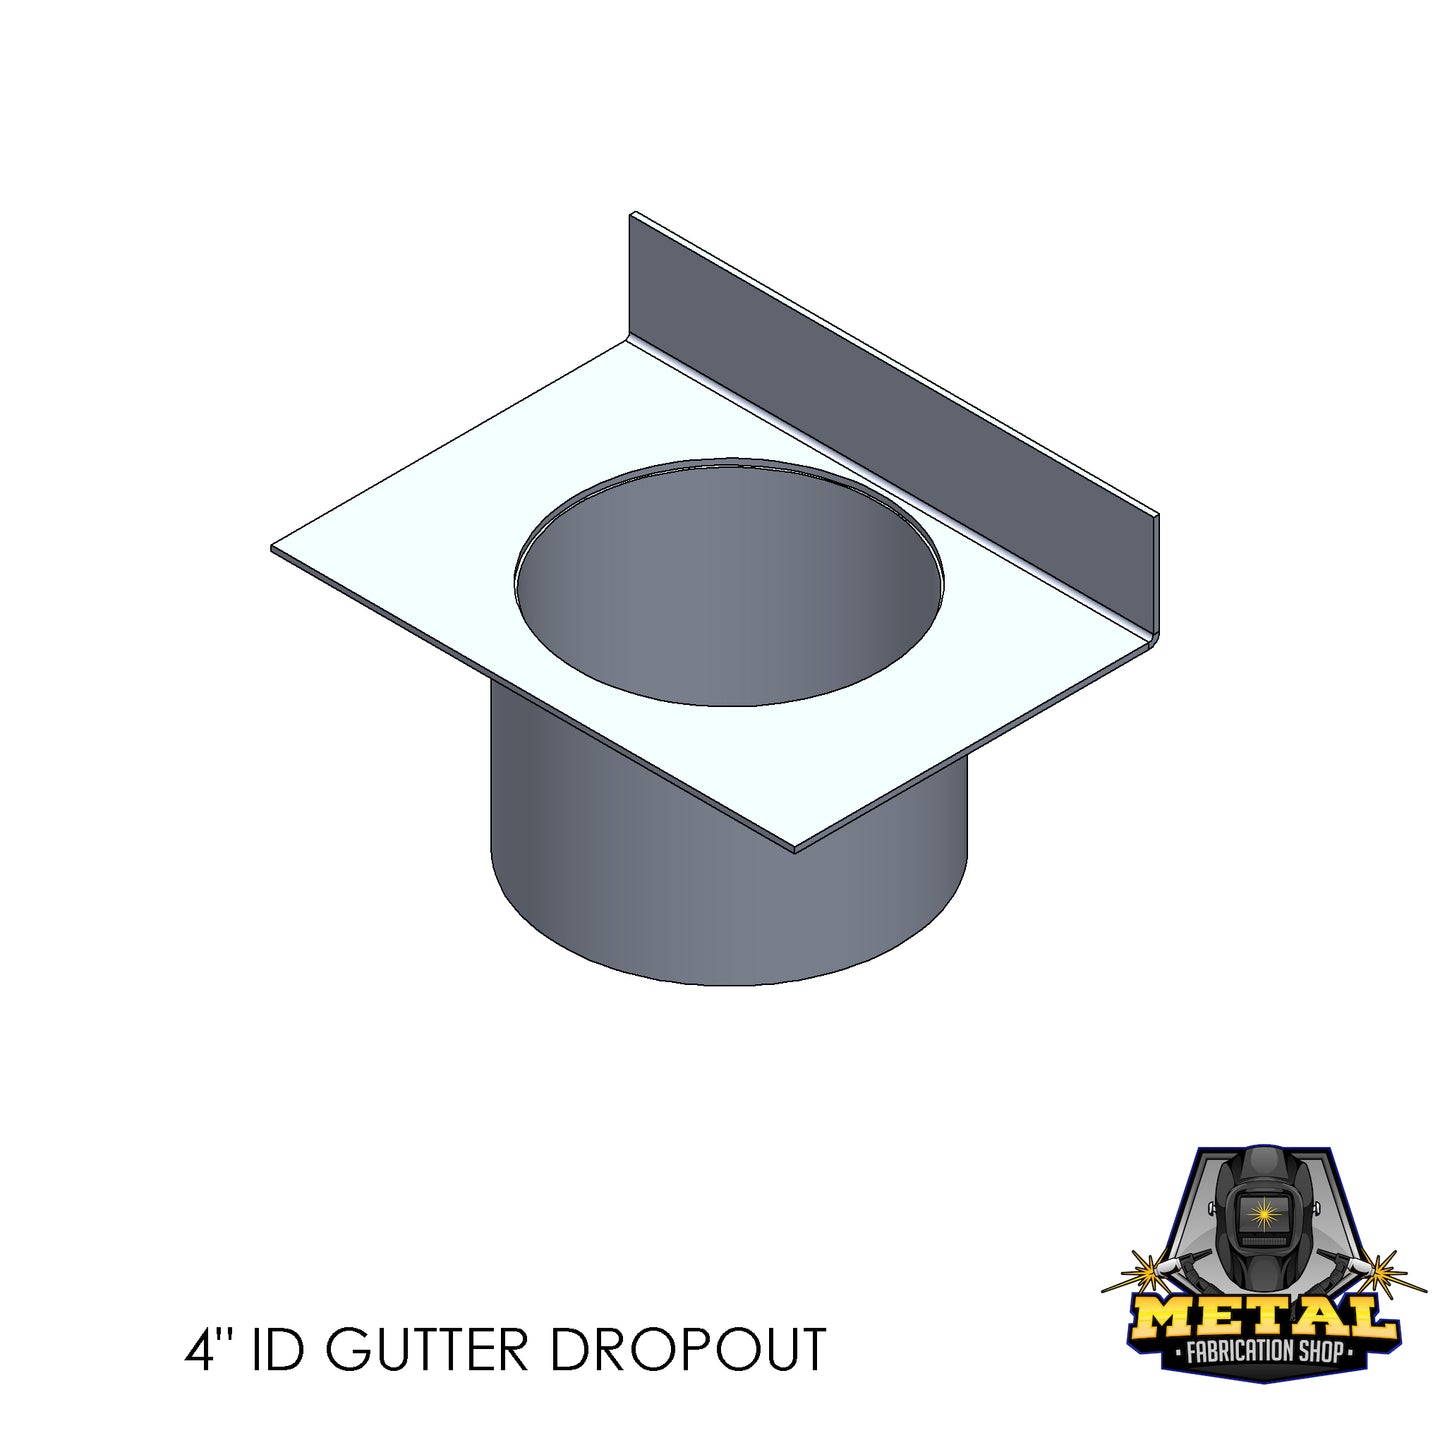 4" ID Aluminum Gutter Dropout